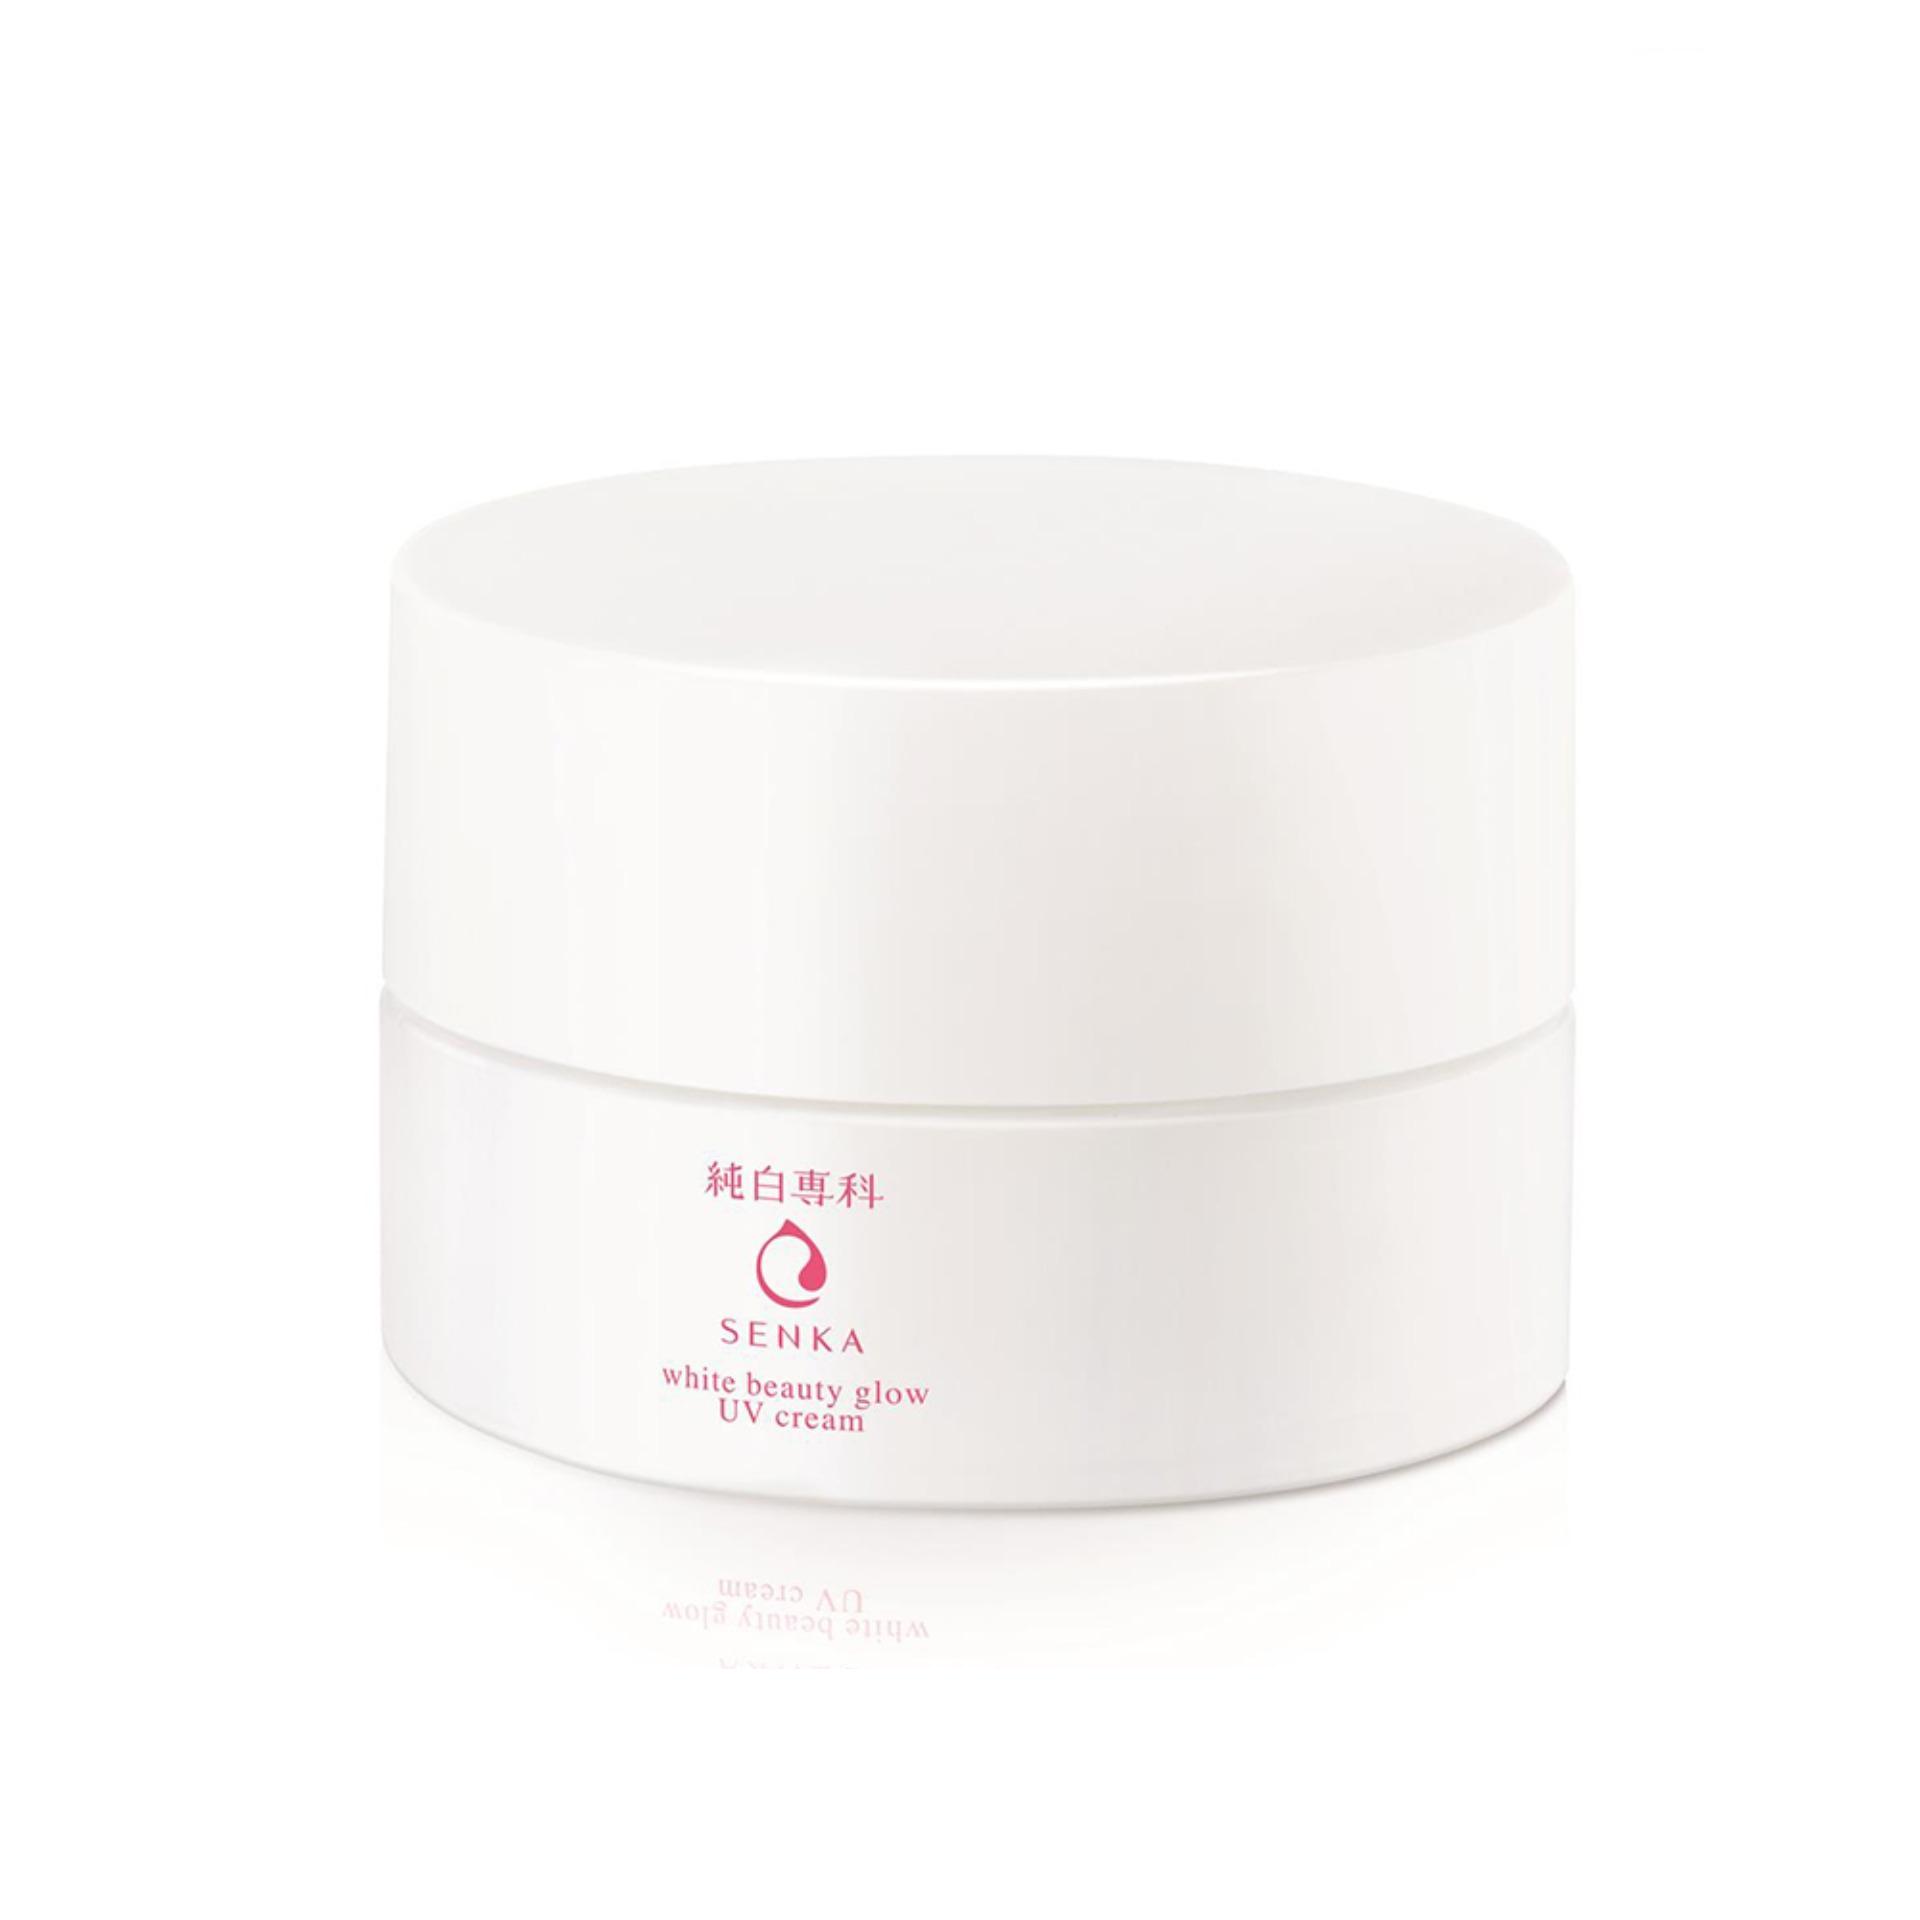 Kem dưỡng trắng da chống nắng ban ngày Senka White Beauty Glow UV Cream SPF 25 PA ++ 50g - 15539